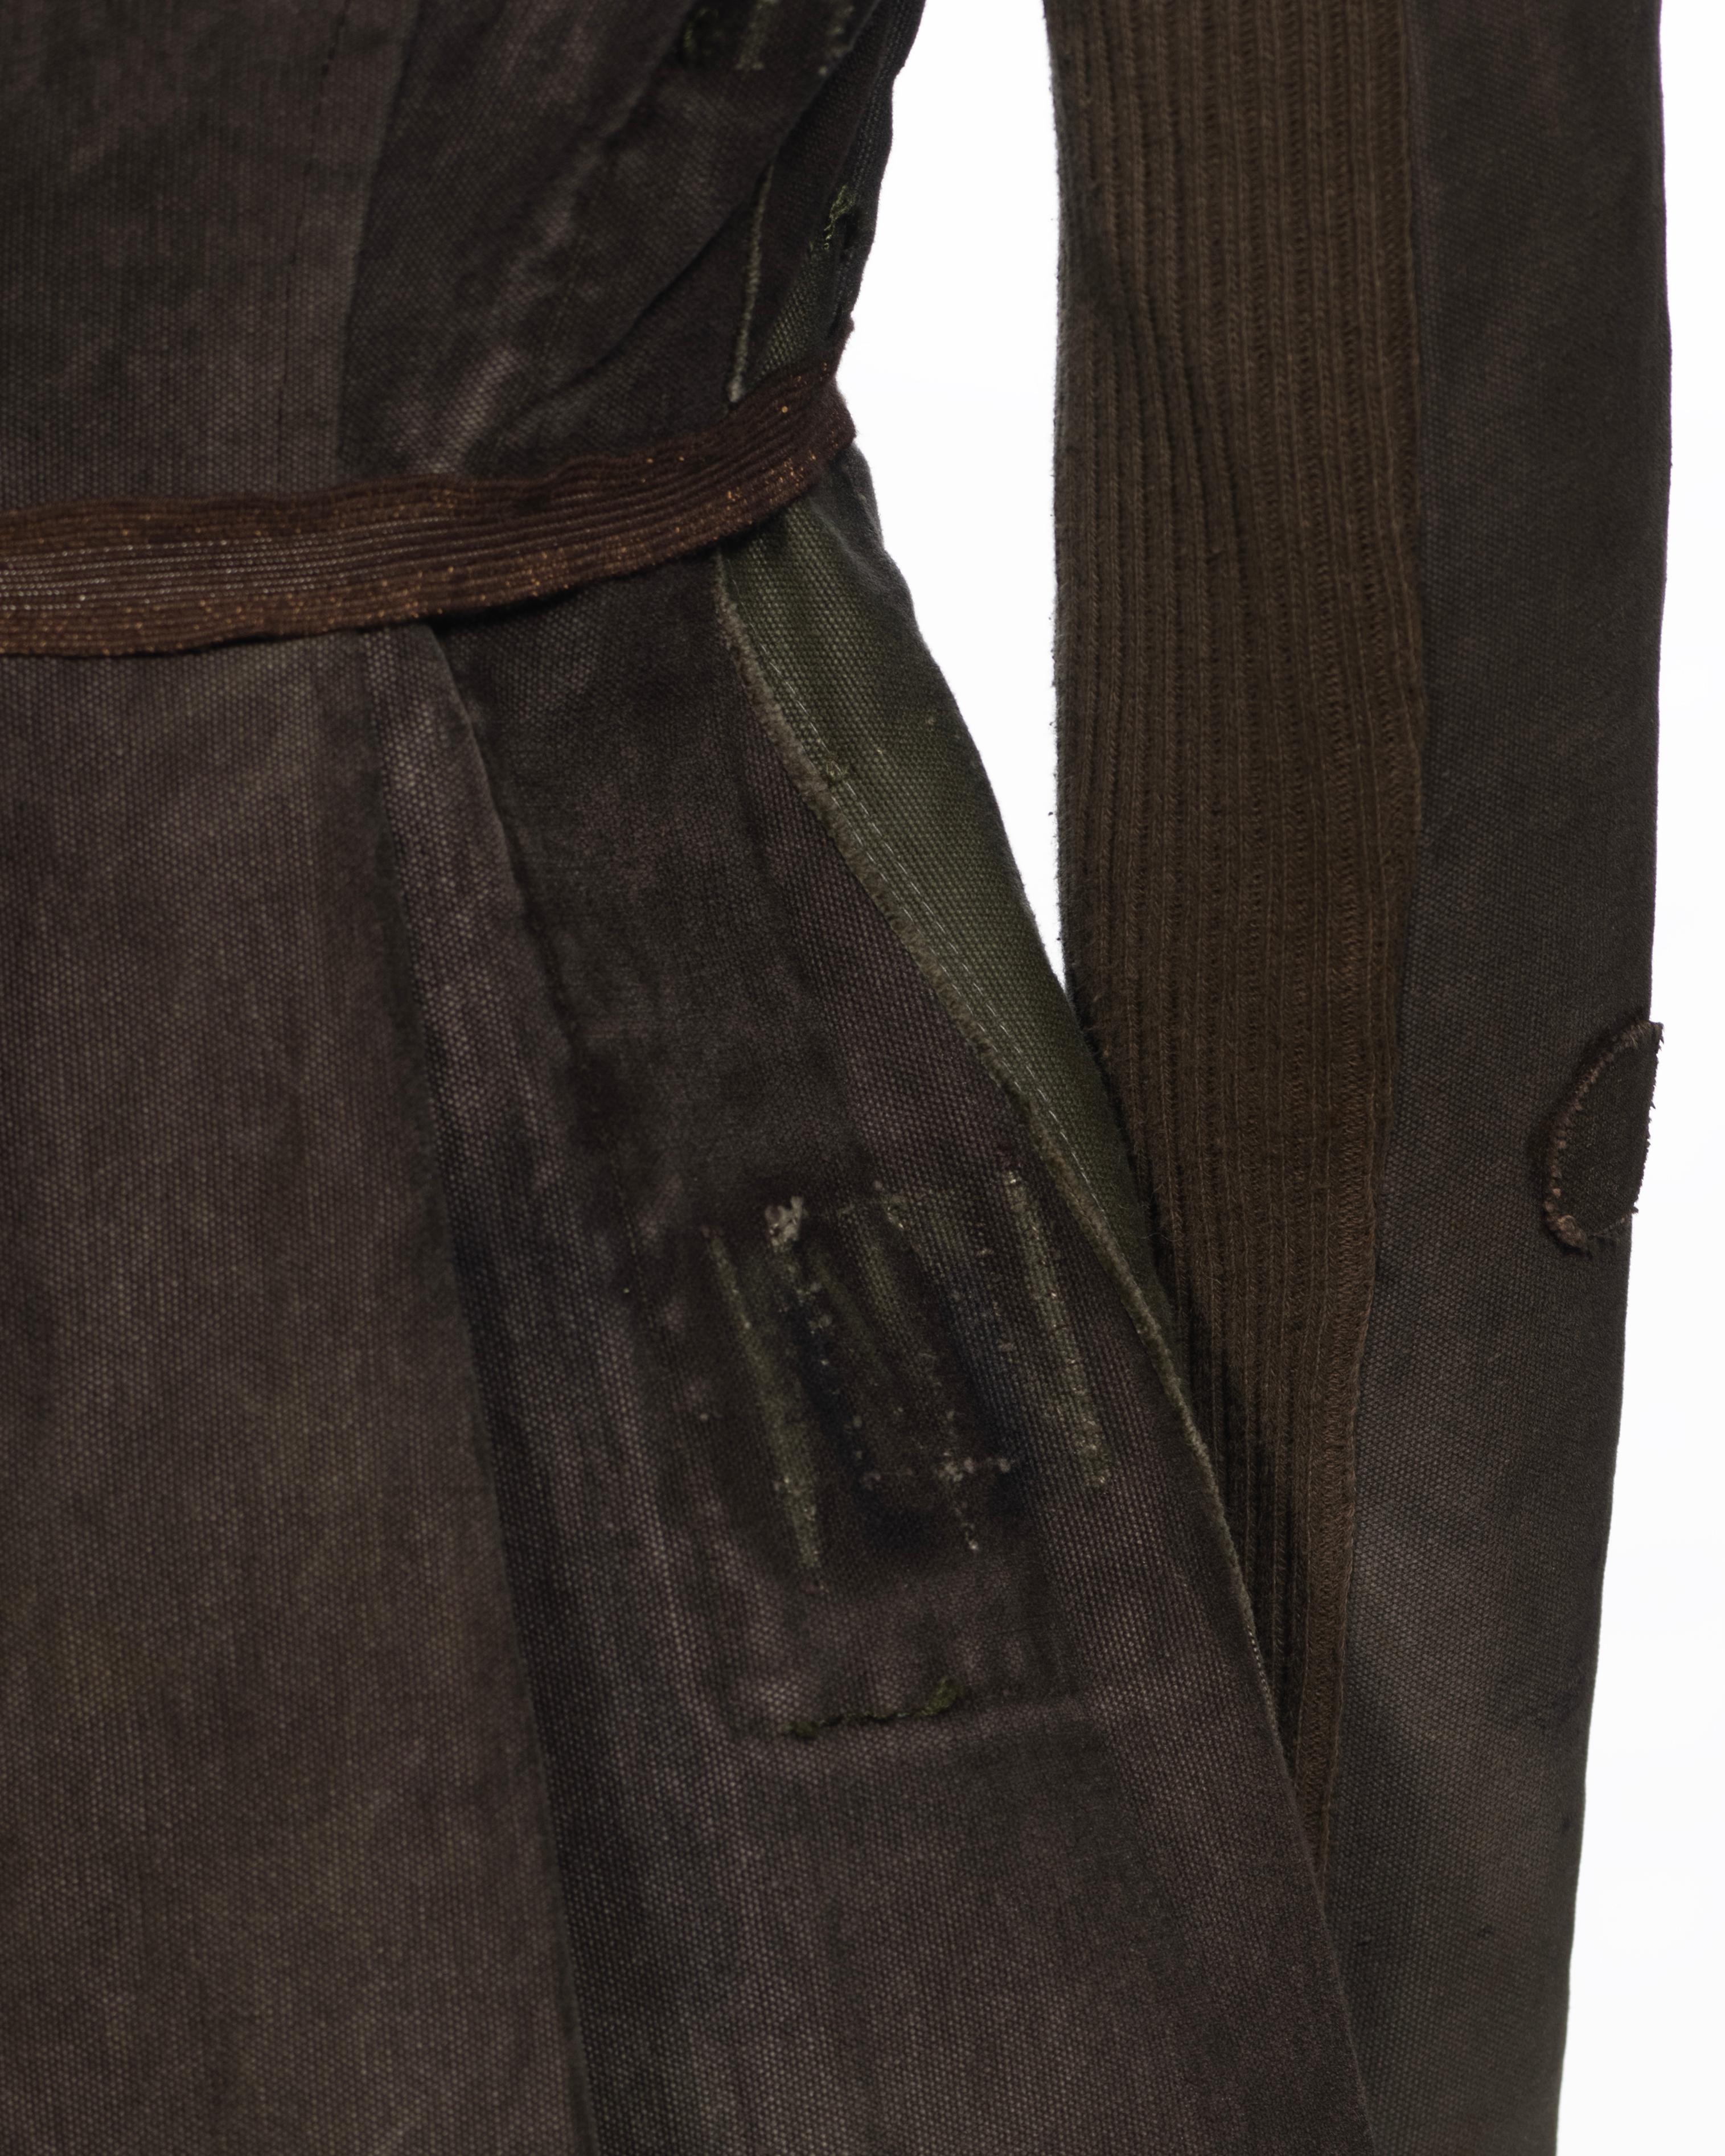 Veste de Rick Owens fabriquée à partir de sacs militaires déclassés, vers 1998 9